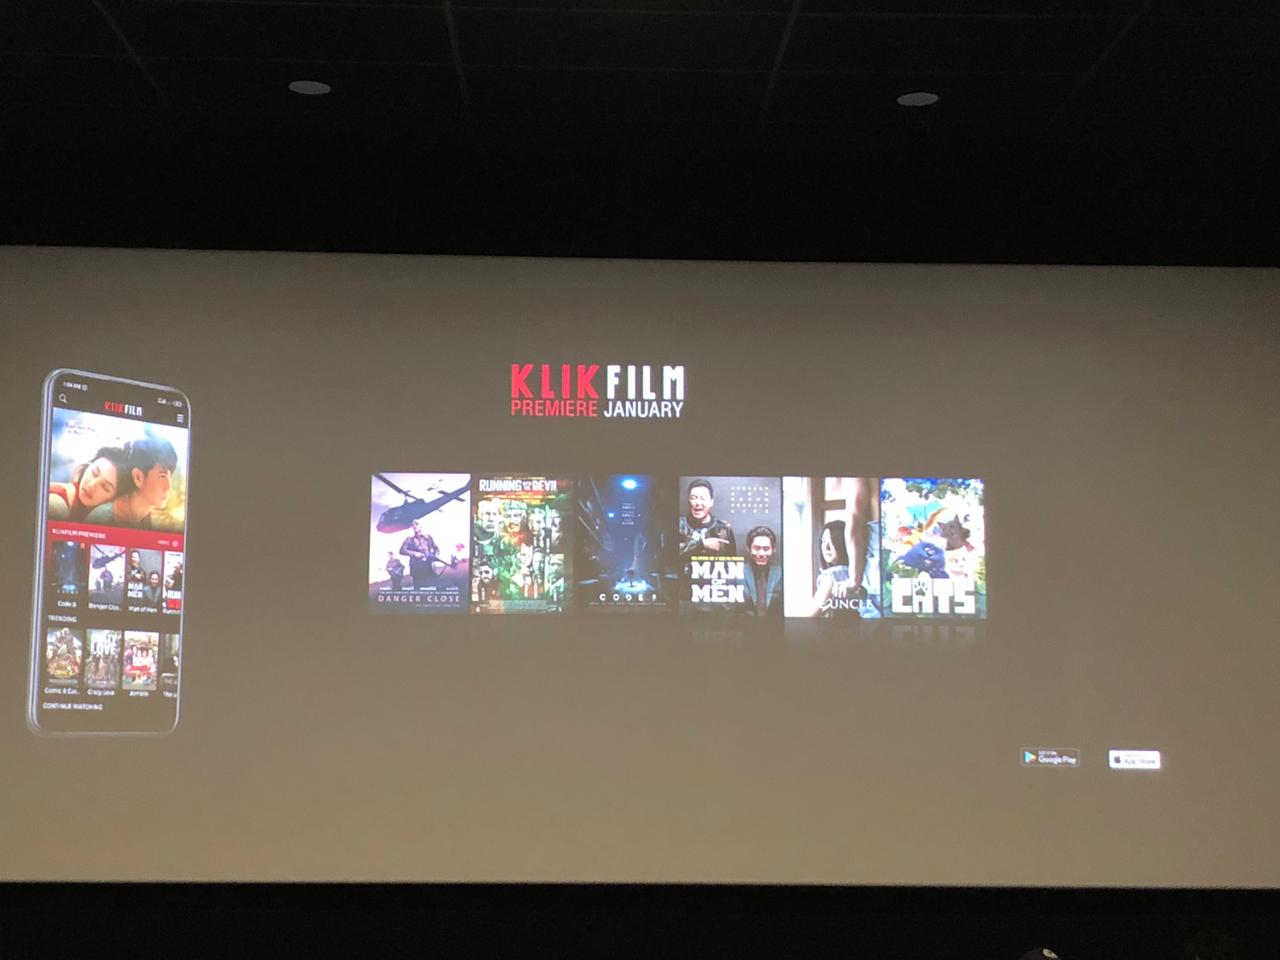 KlikFilm, aplikasi nonton film online legal multi genre